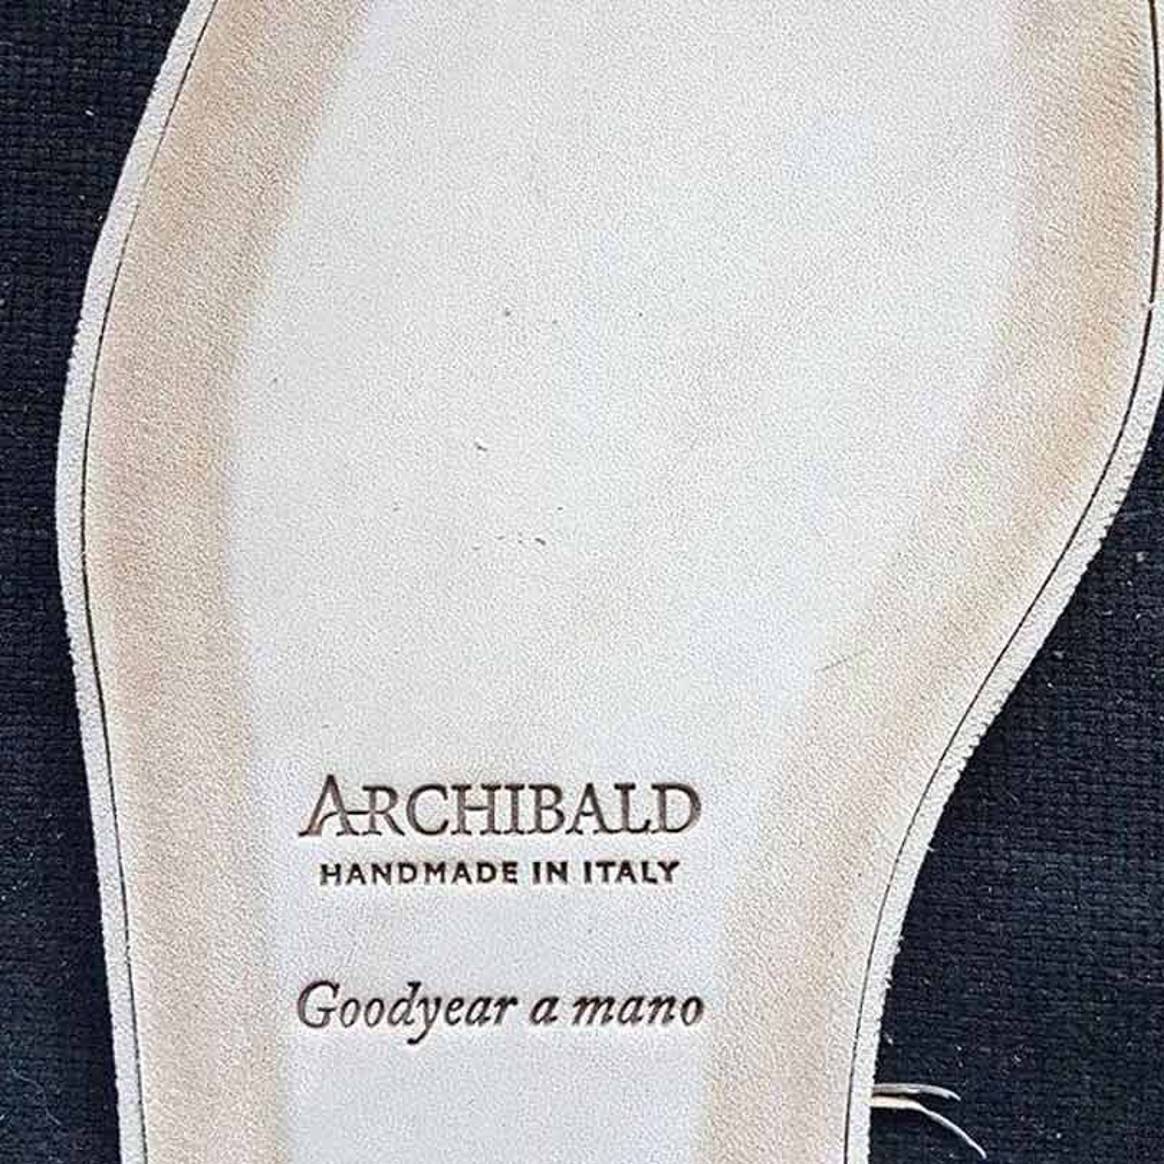 Archibald London: rompiendo el mercado siguiendo el camino del lujo